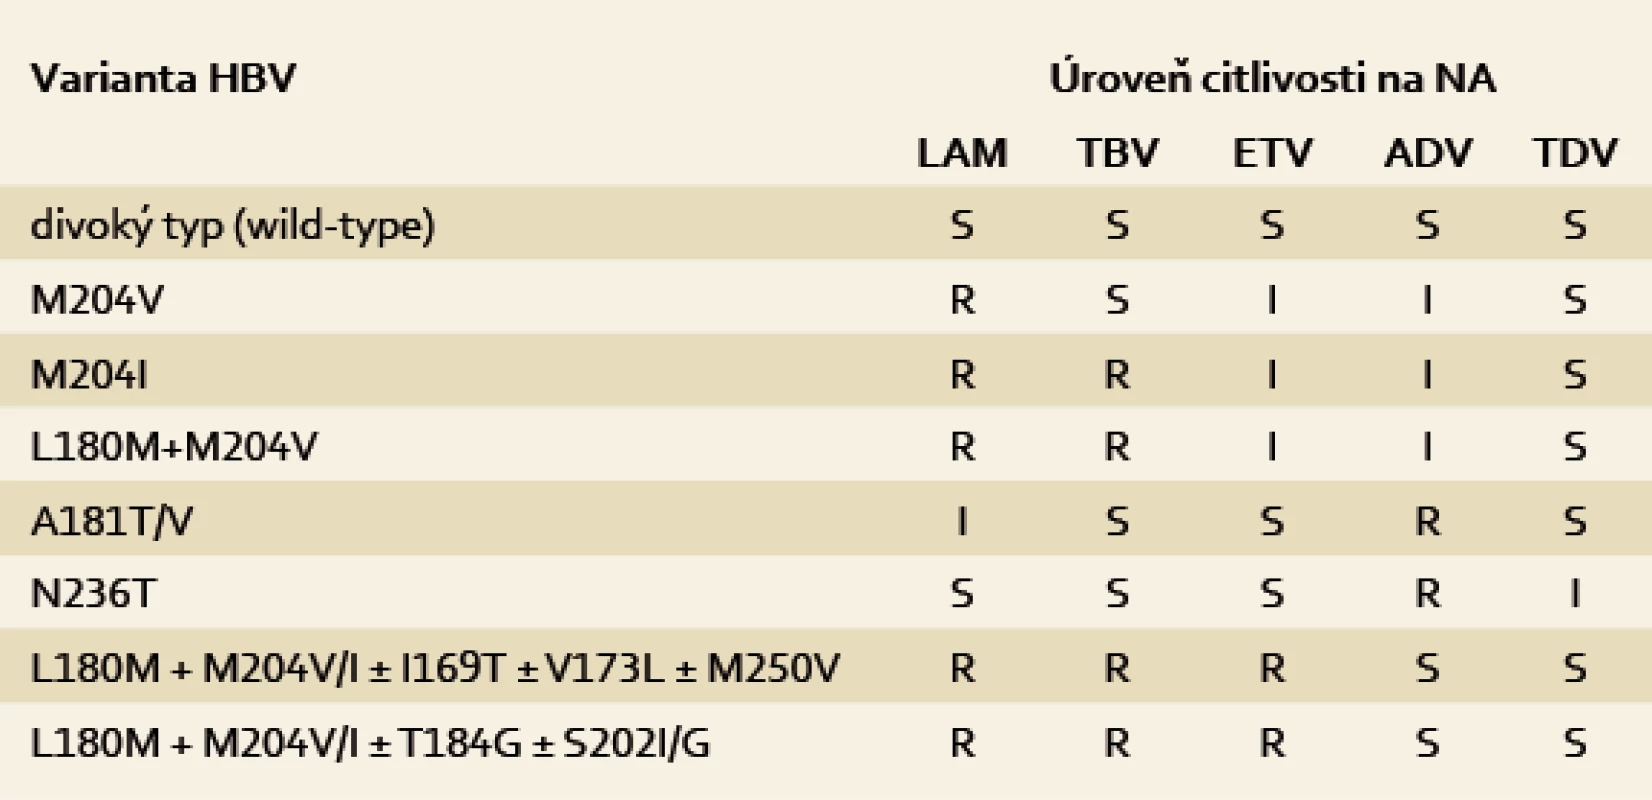 Zkřížená rezistence mezi mutantami HBV, které vznikají při léčbě
na nejčastěji (S – citlivost, R – rezistence, i – snížená citlivost) [3].
Tab. 4. Cross-resistance between HBV mutants which arise most frequently
in the treatment (S – sensitivity, R – resistance, I – insensitivity) [3].